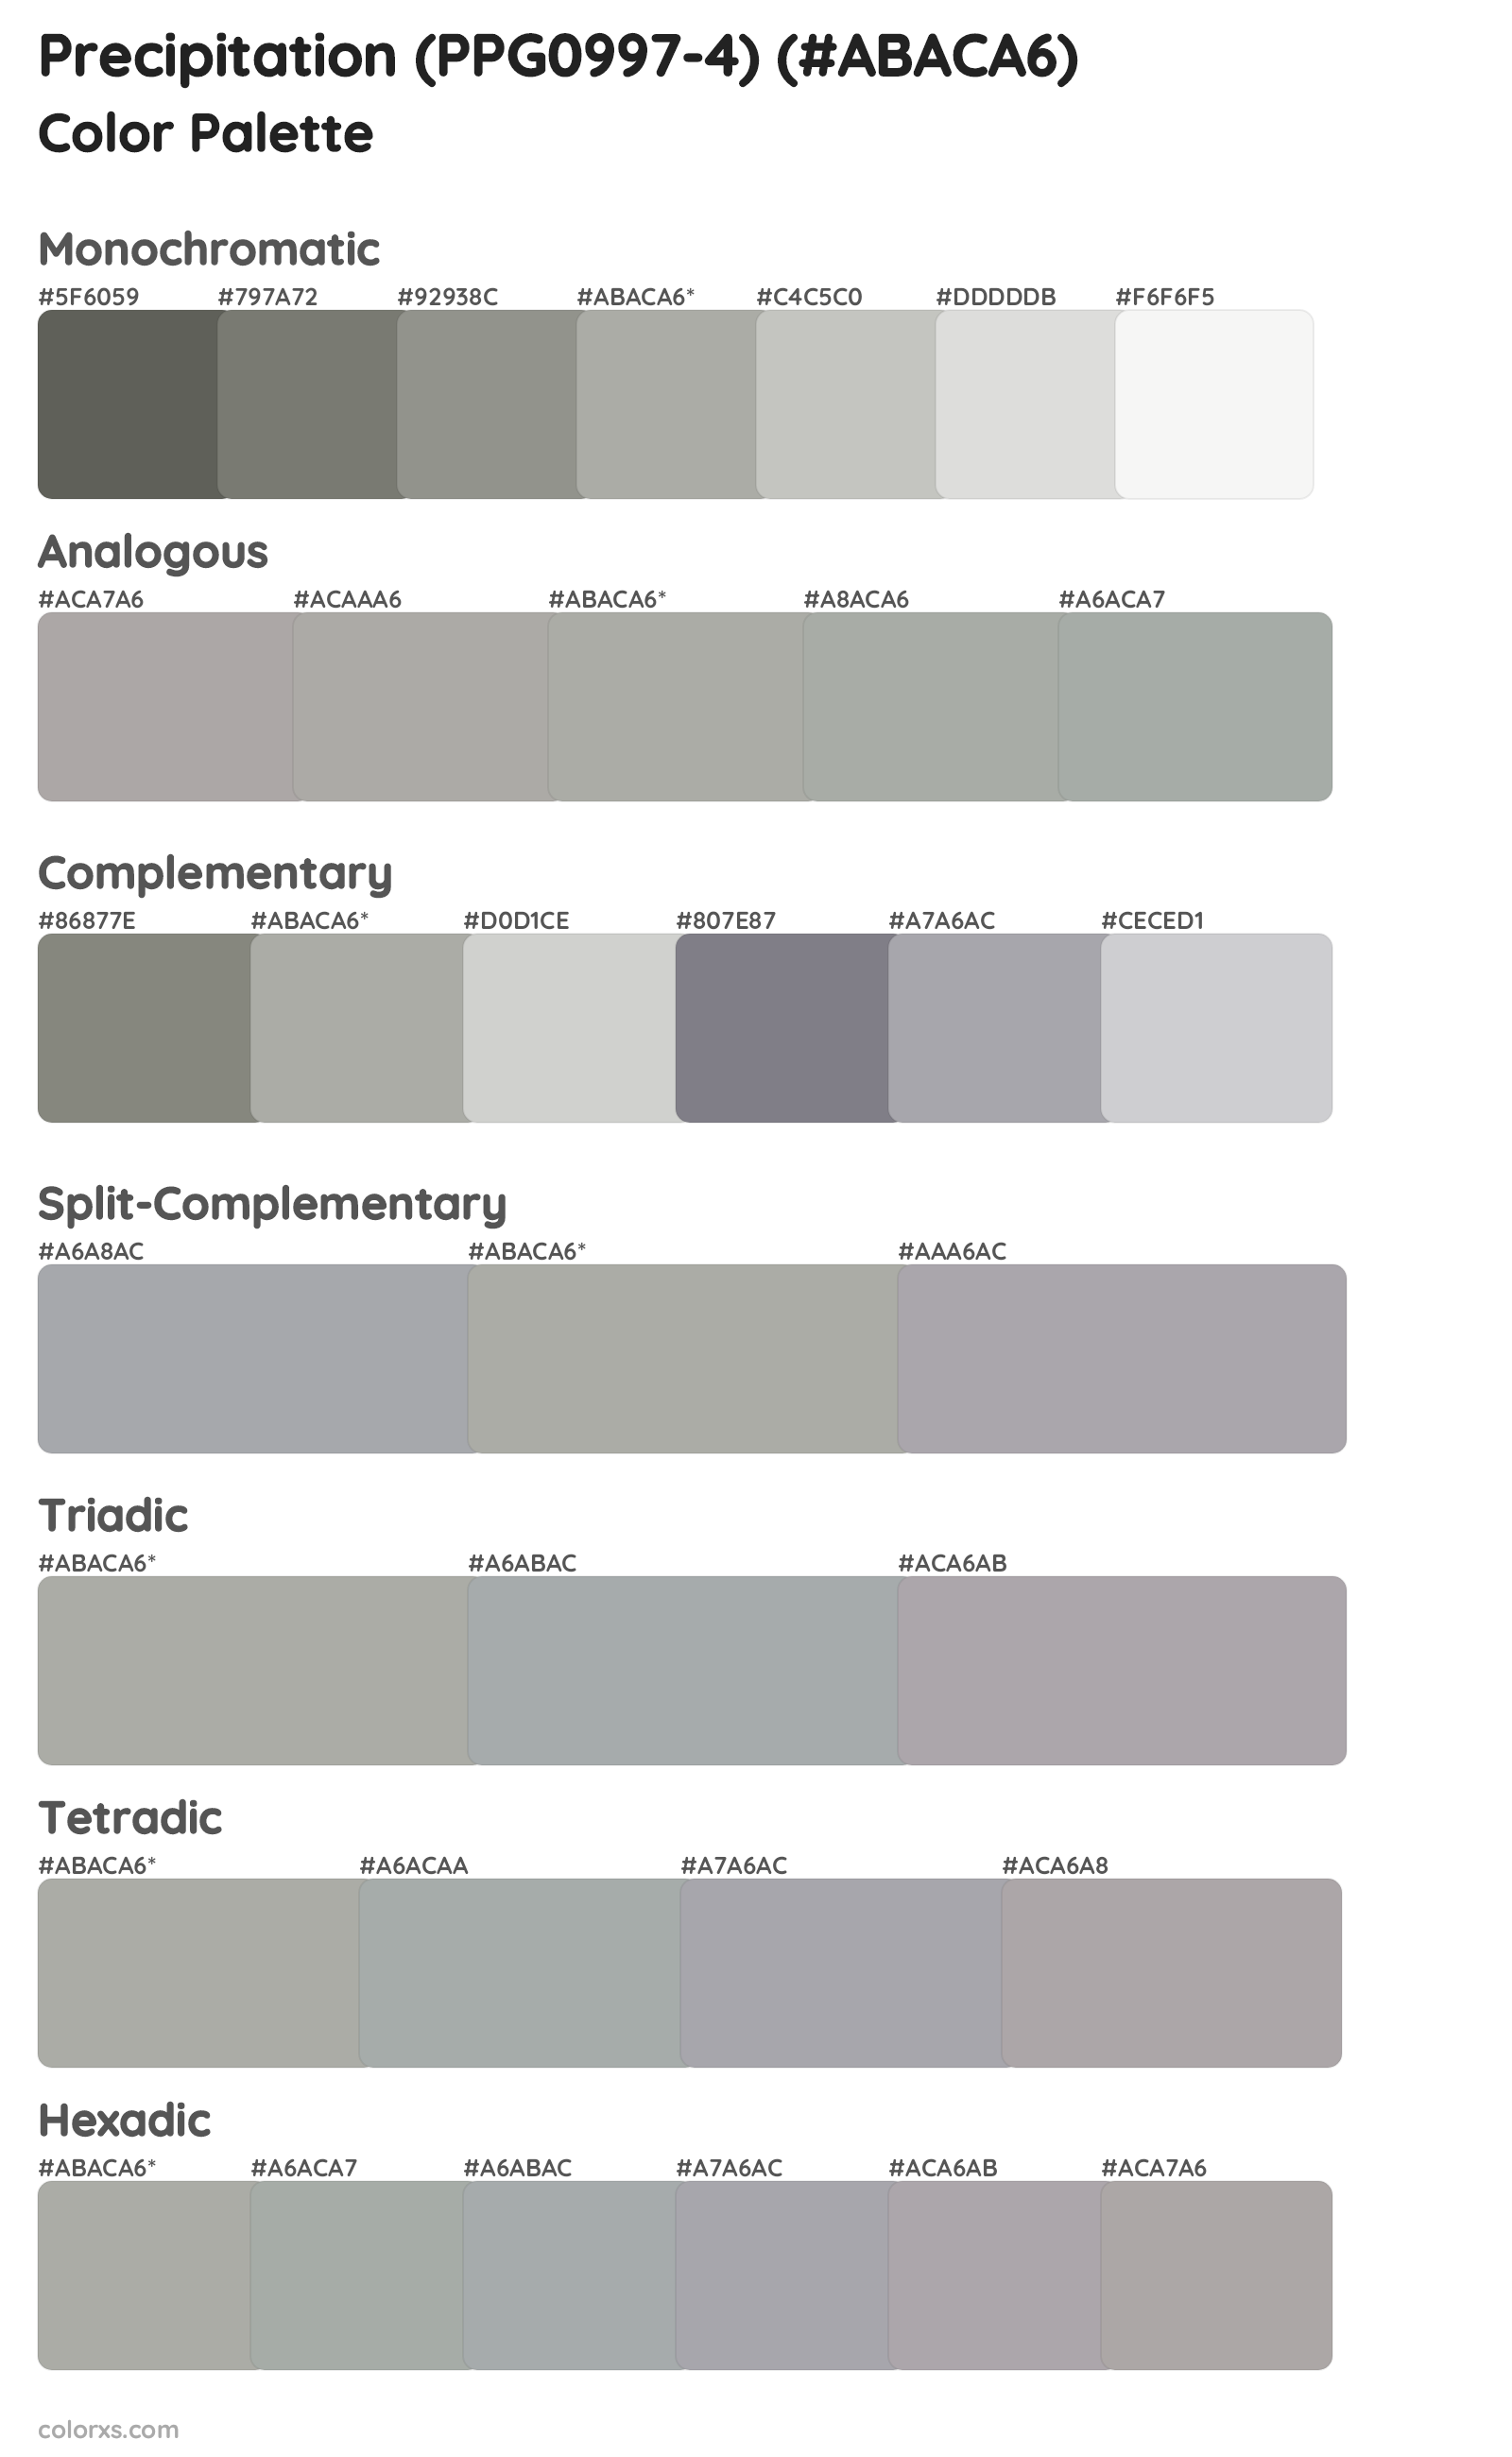 Precipitation (PPG0997-4) Color Scheme Palettes